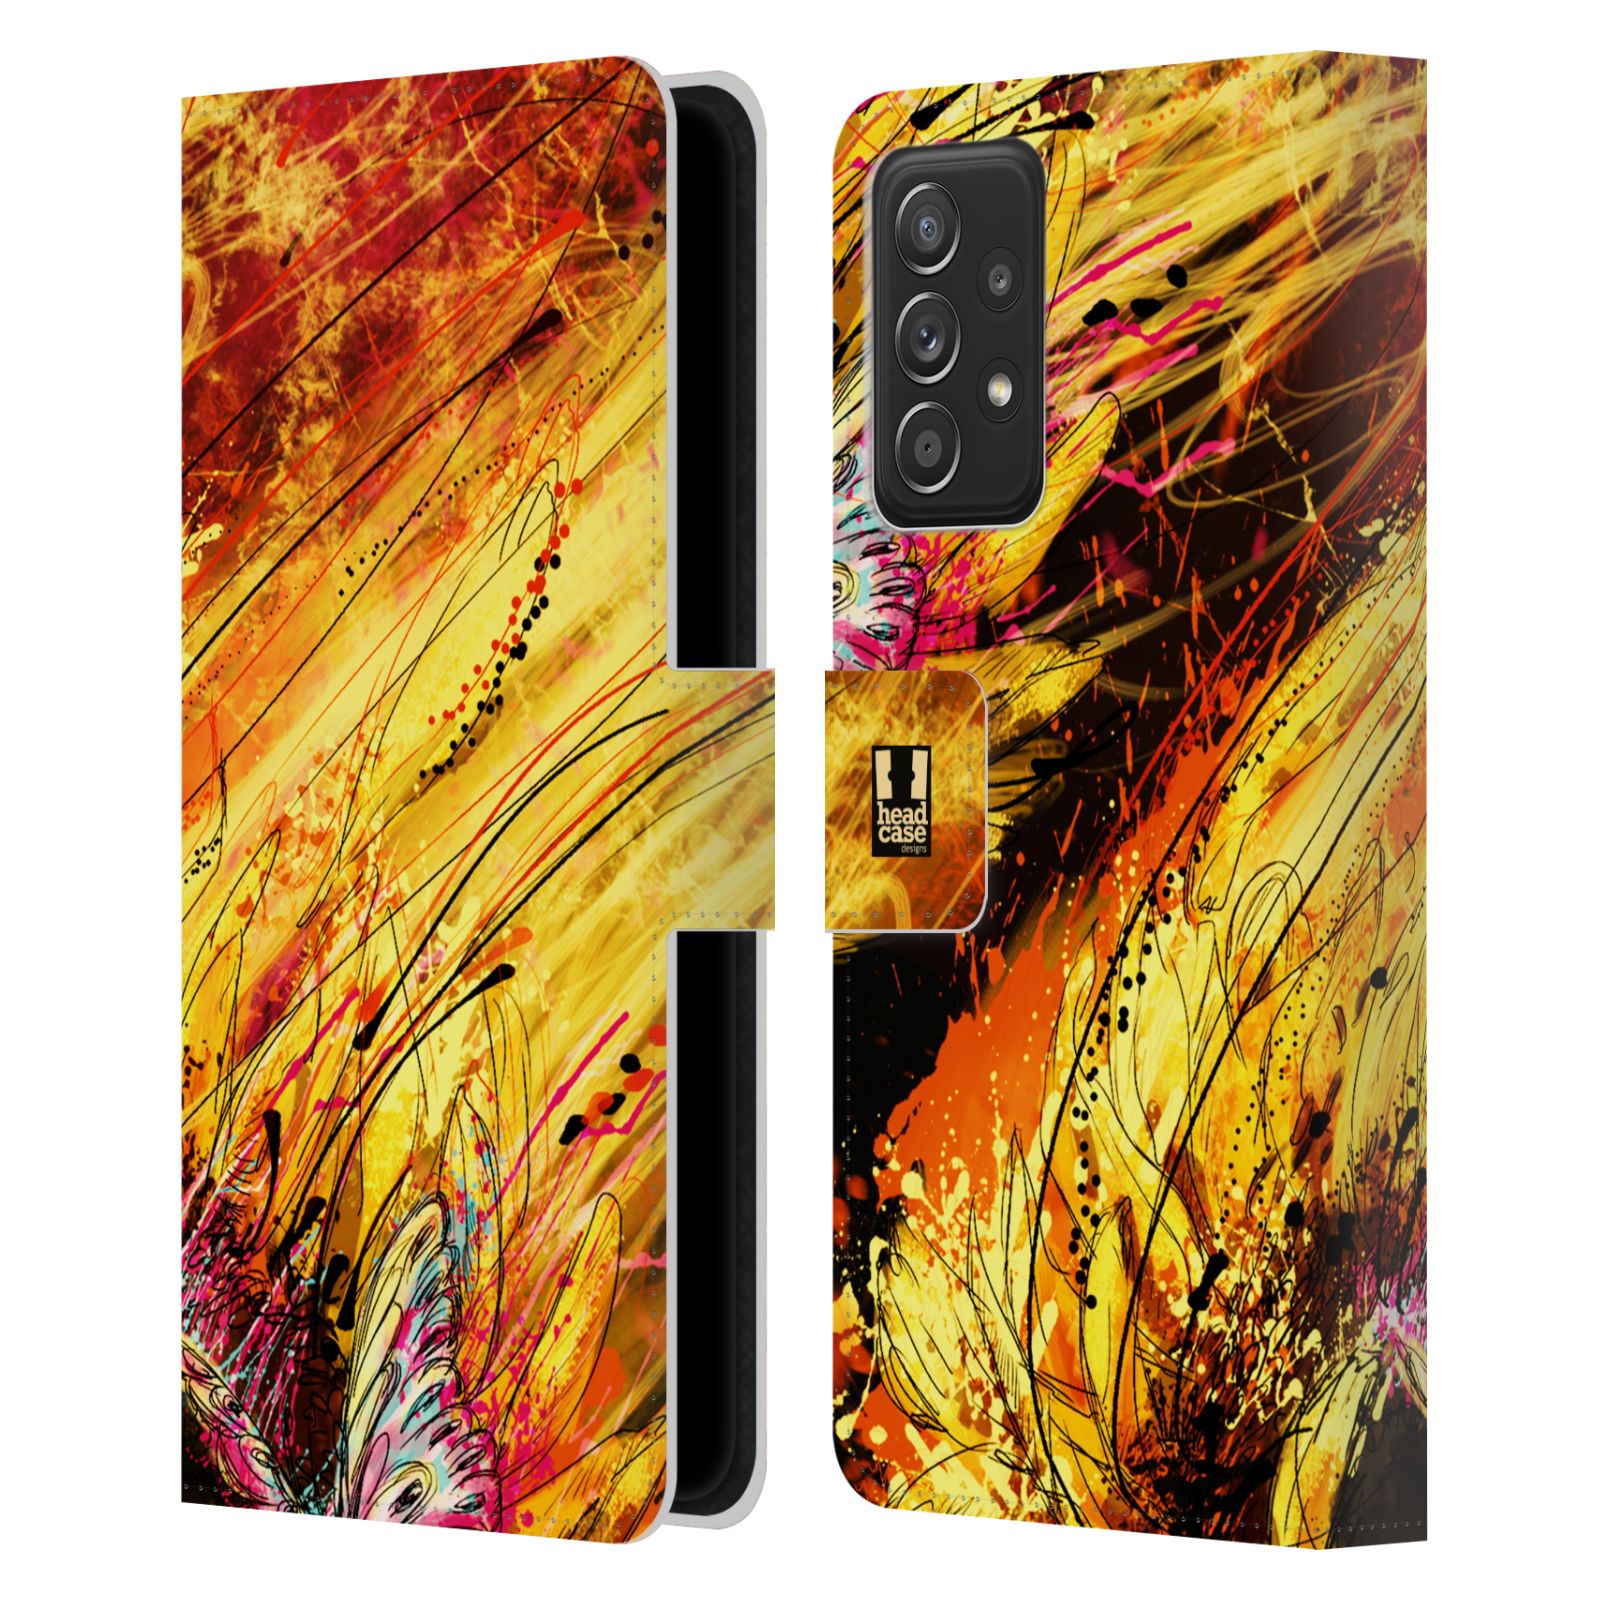 Pouzdro HEAD CASE na mobil Samsung Galaxy A52 / A52 5G / A52s 5G barevná malba květy slunečnice žlutá